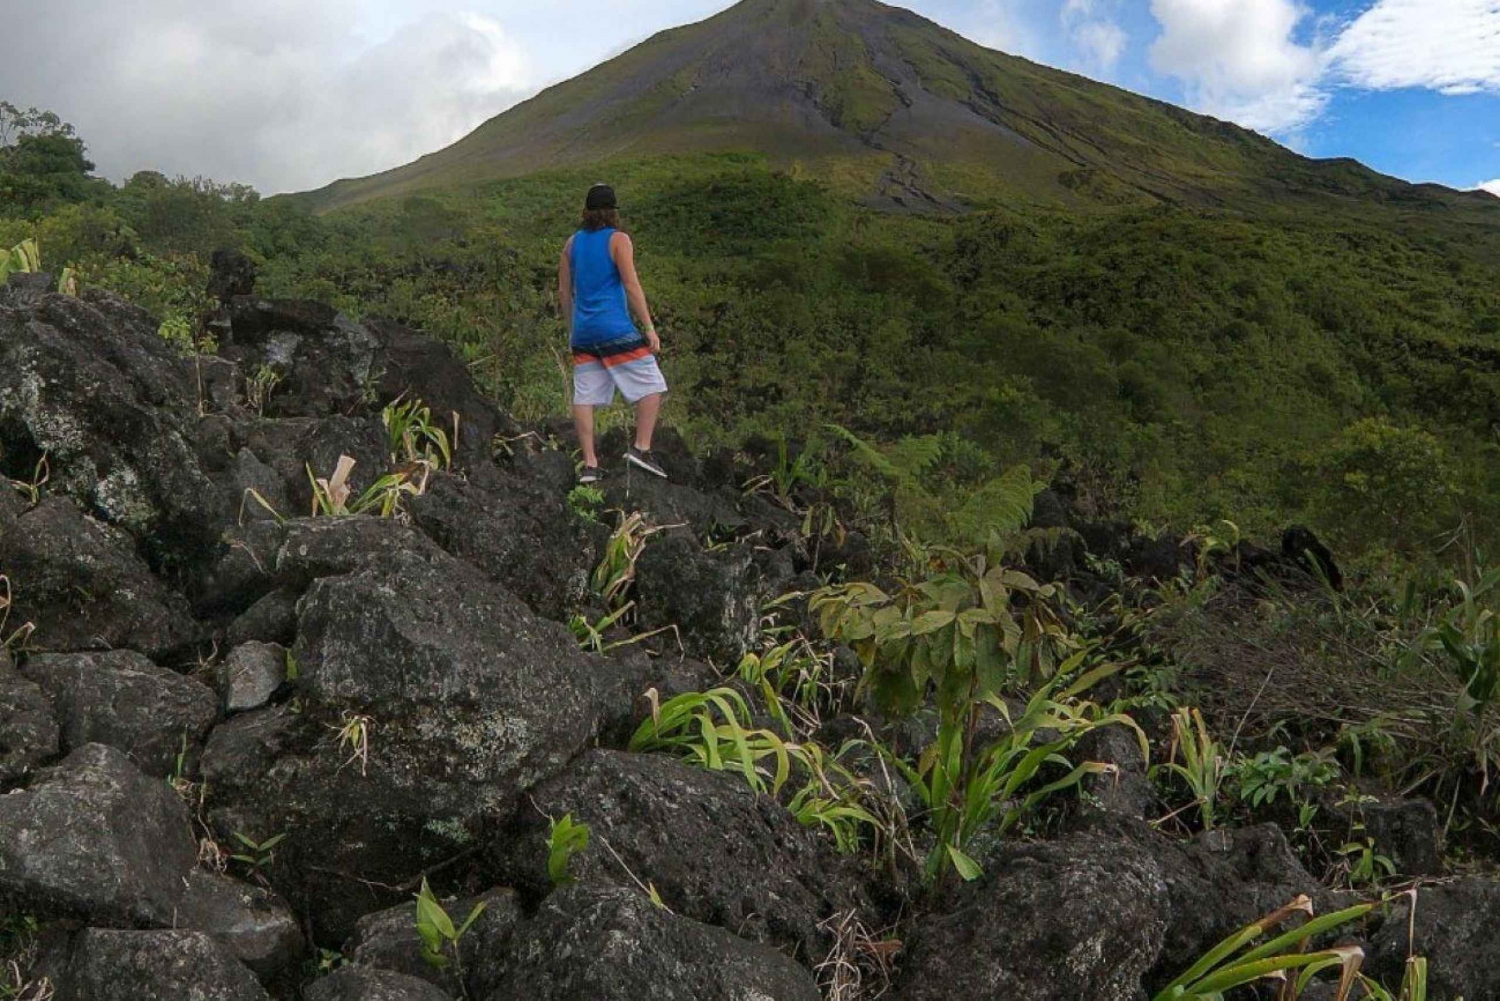 La Fortuna: Excursión crepuscular al Volcán Arenal con aguas termales